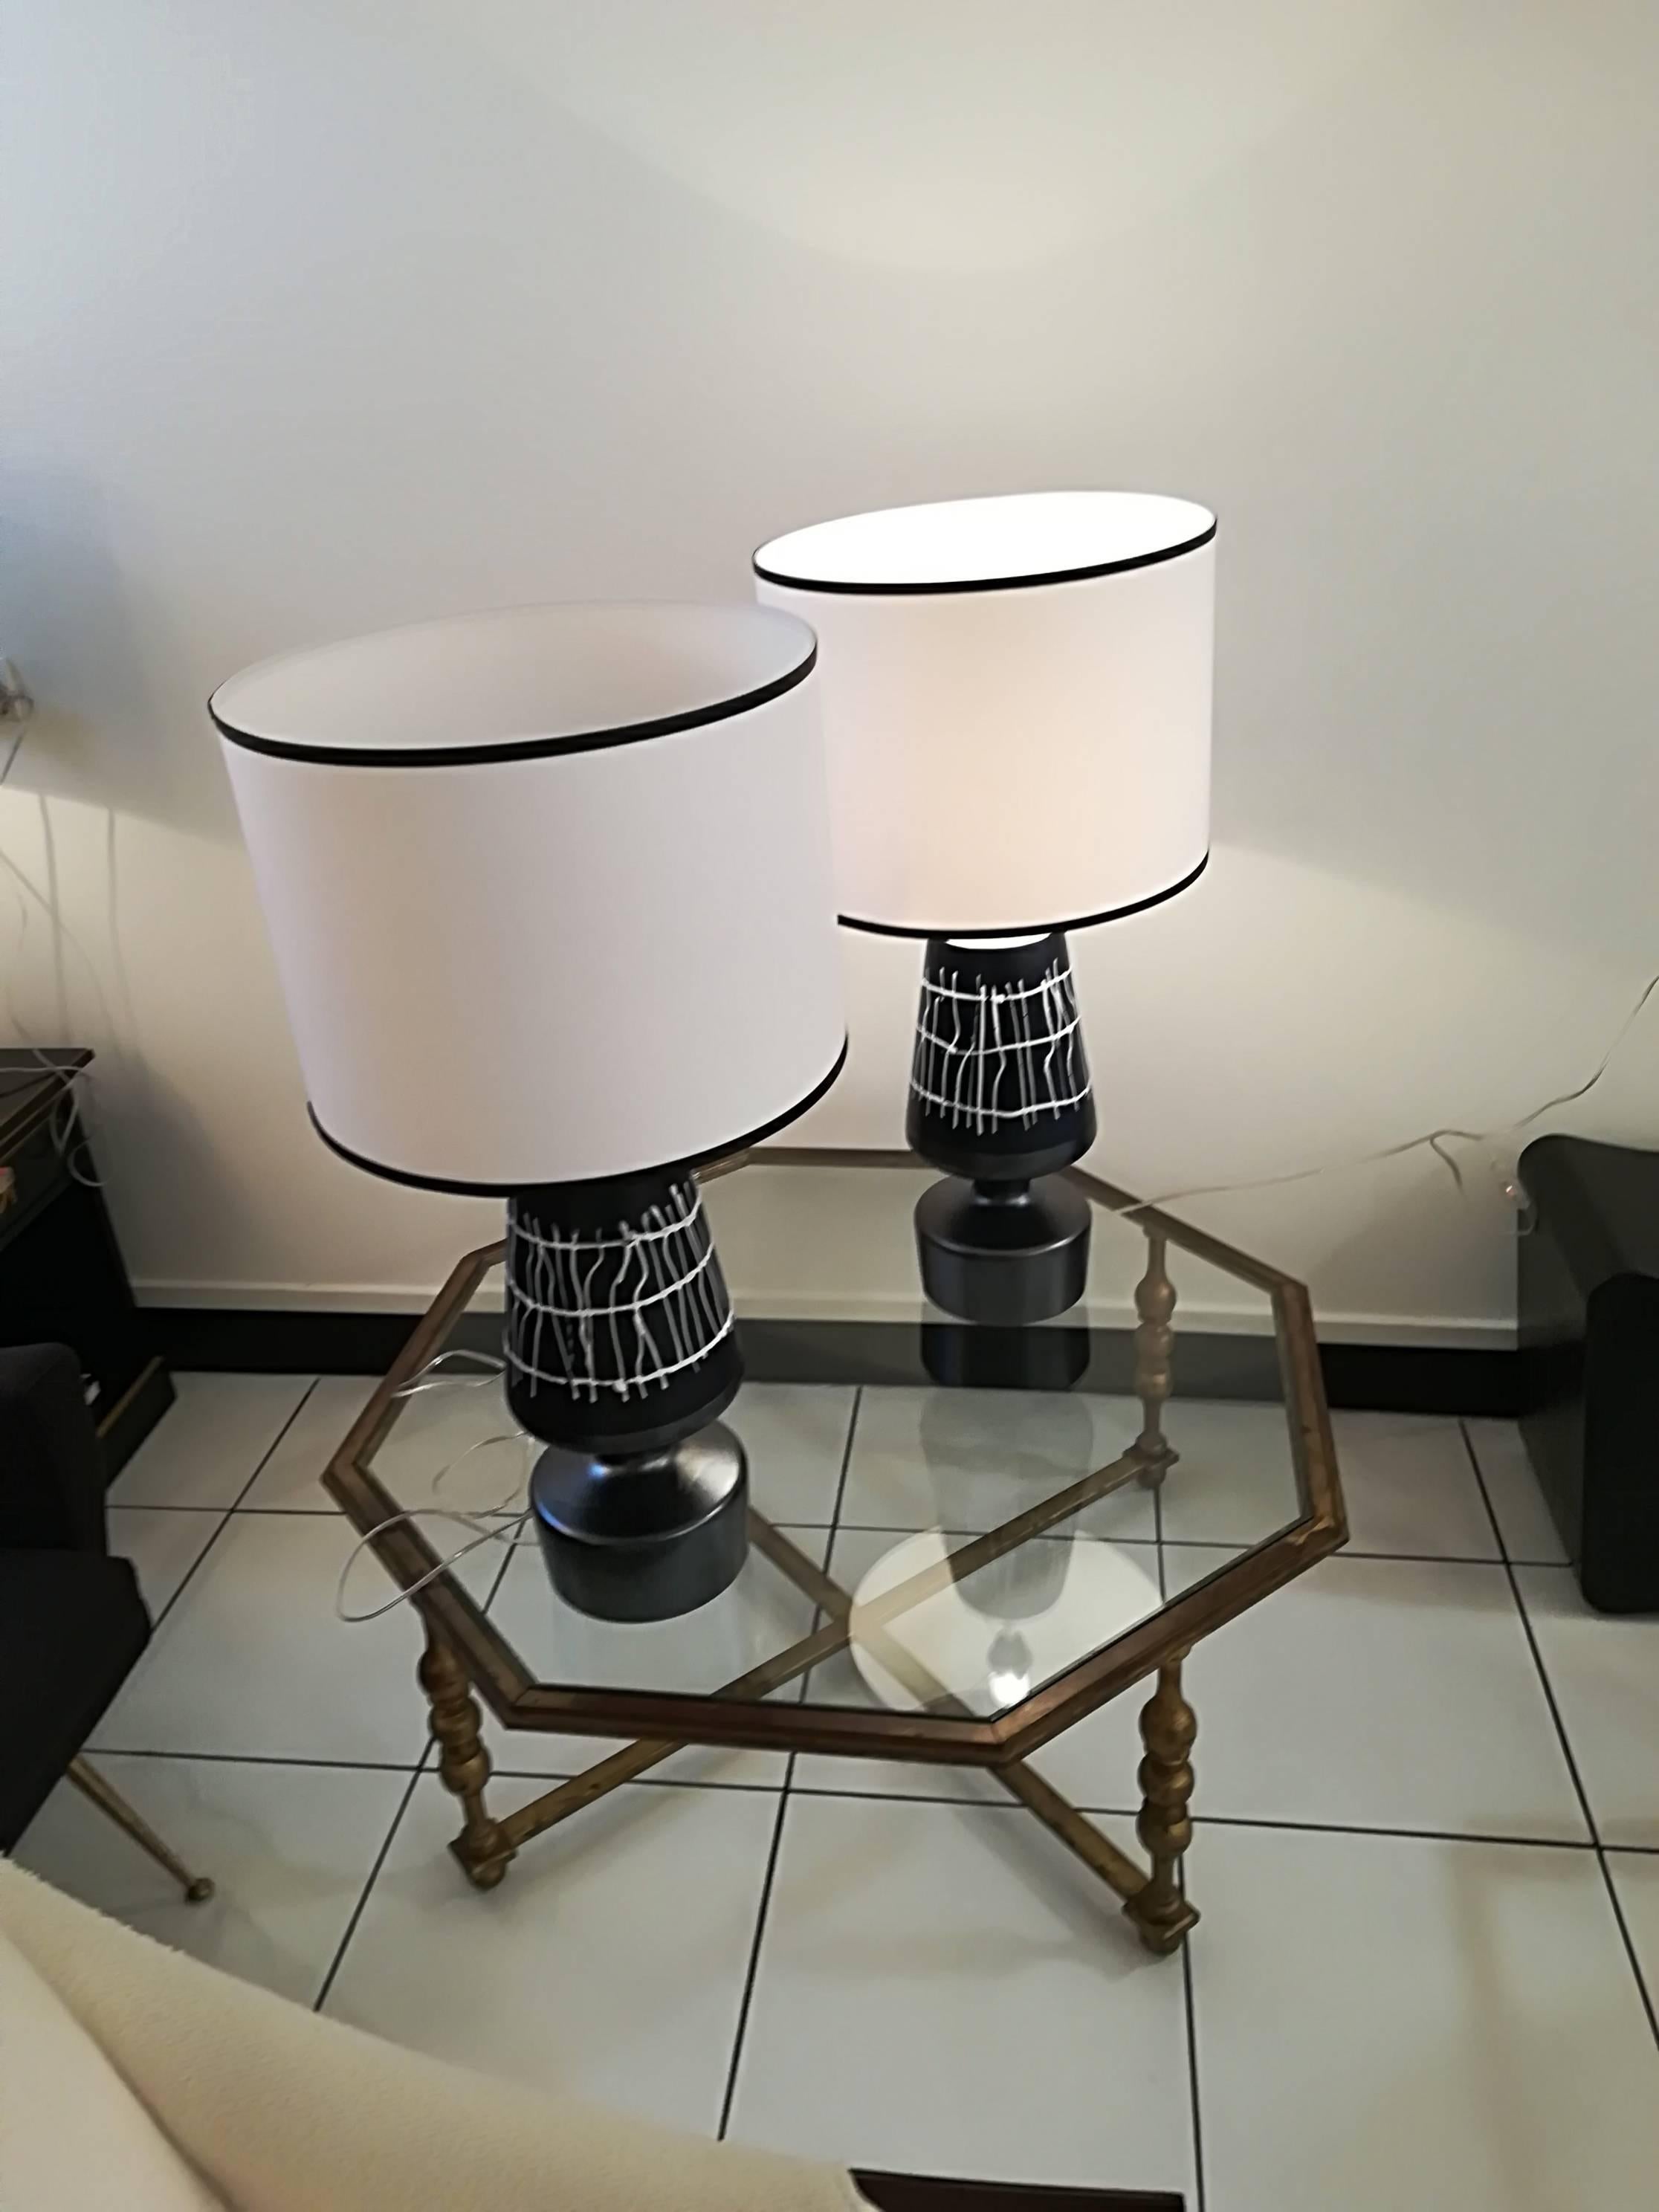 Pair of French Ceramic Table Lamps, handgefertigt, jedes Dekor ist etwas anders, 
elegante Lampenschirme mitgeliefert
Lampenfuß :55cmx18cm